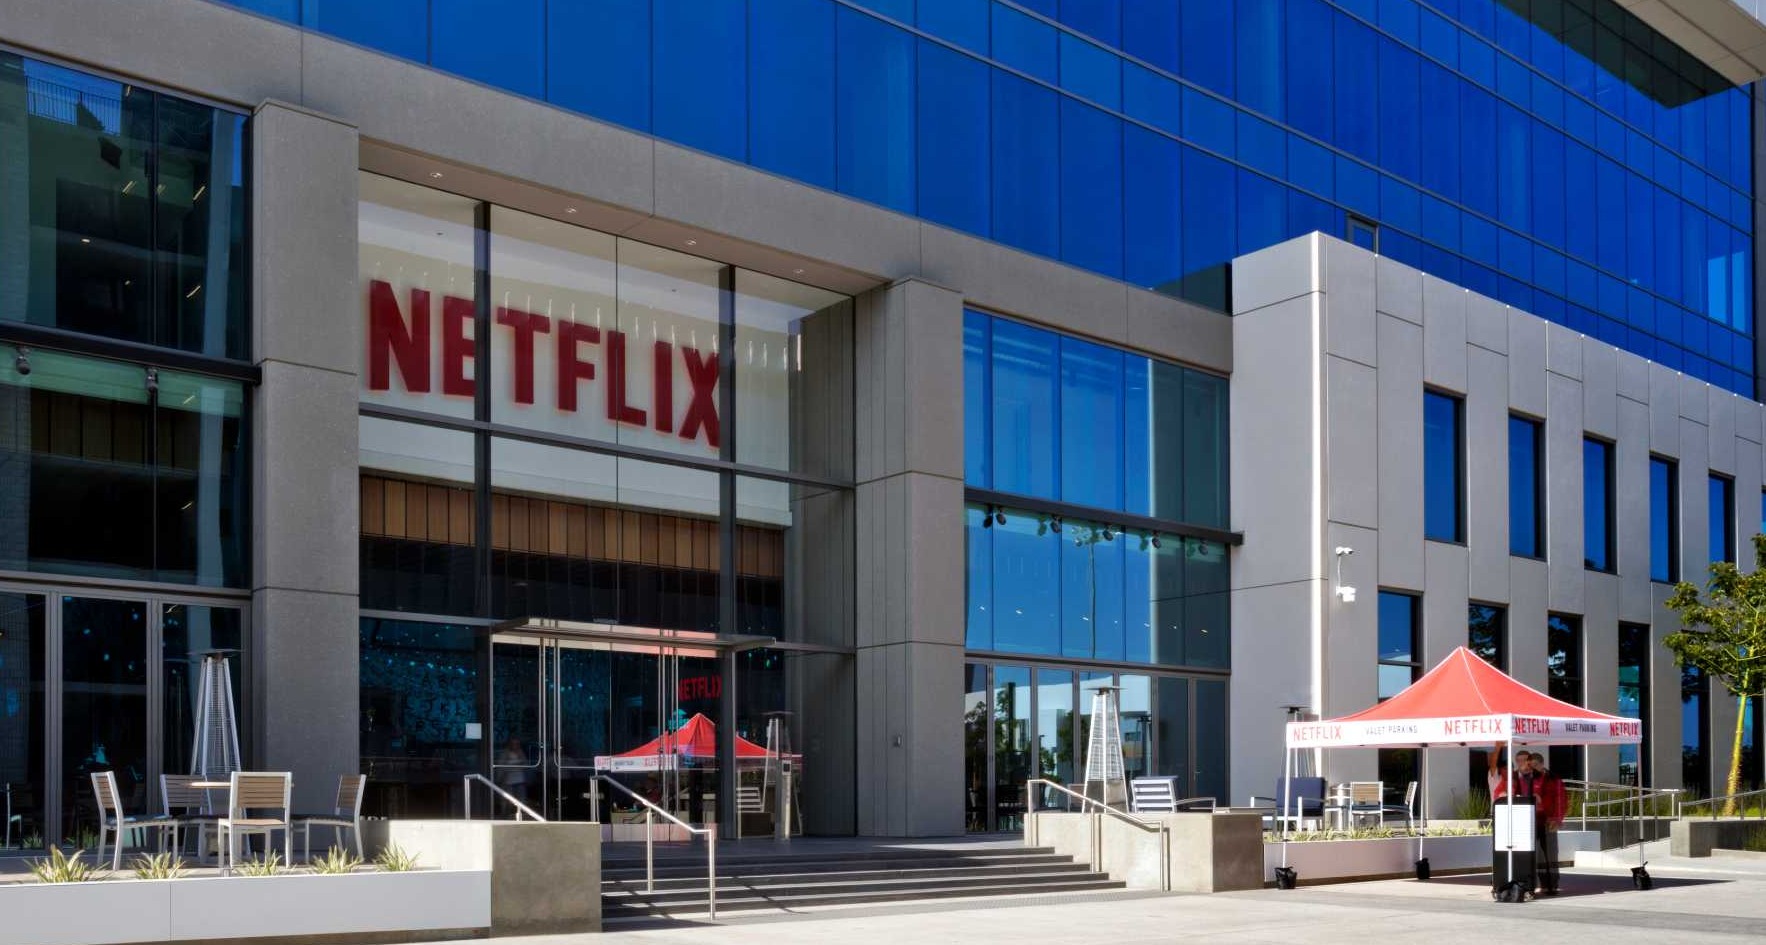 Según Netflix, su plan con anuncios cuenta con casi 5 millones de usuarios activos a nivel global